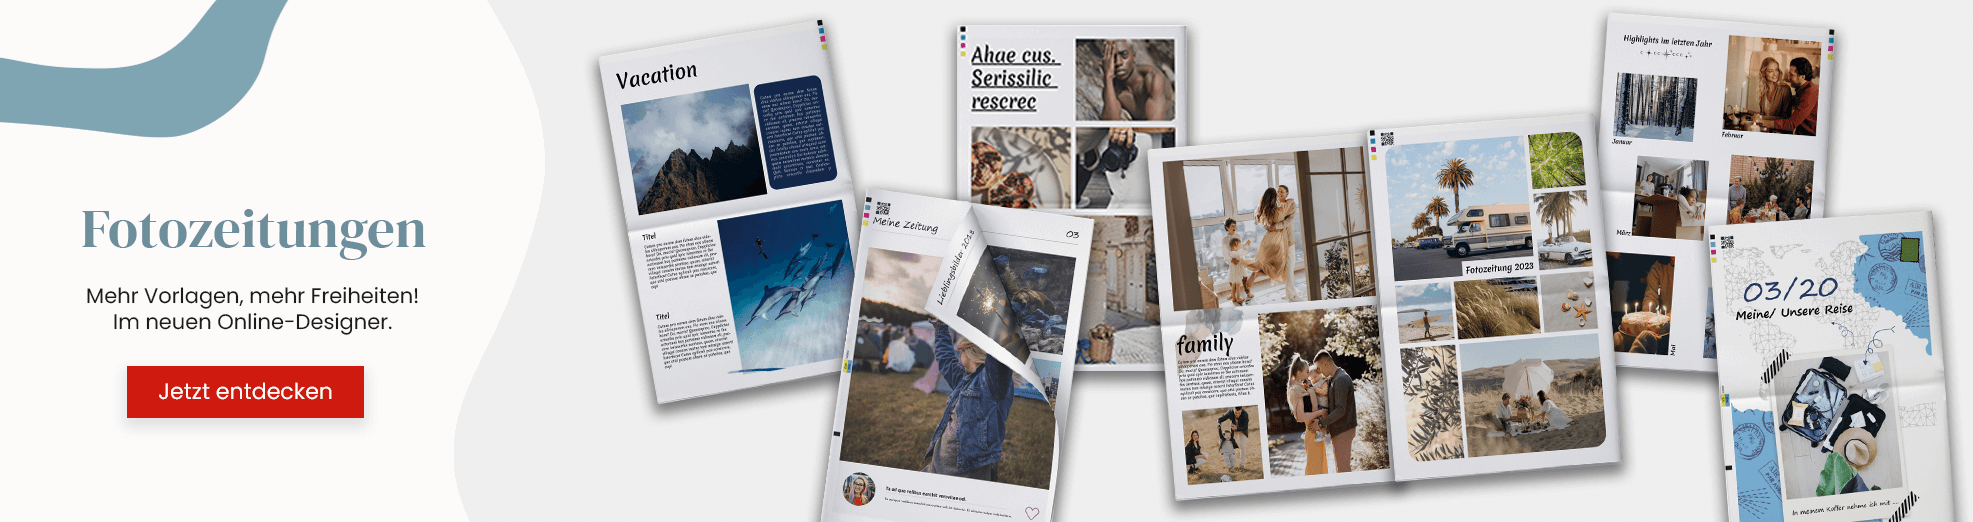 Mehr Vorlagen für Fotozeitungen im neuen Online-Designer